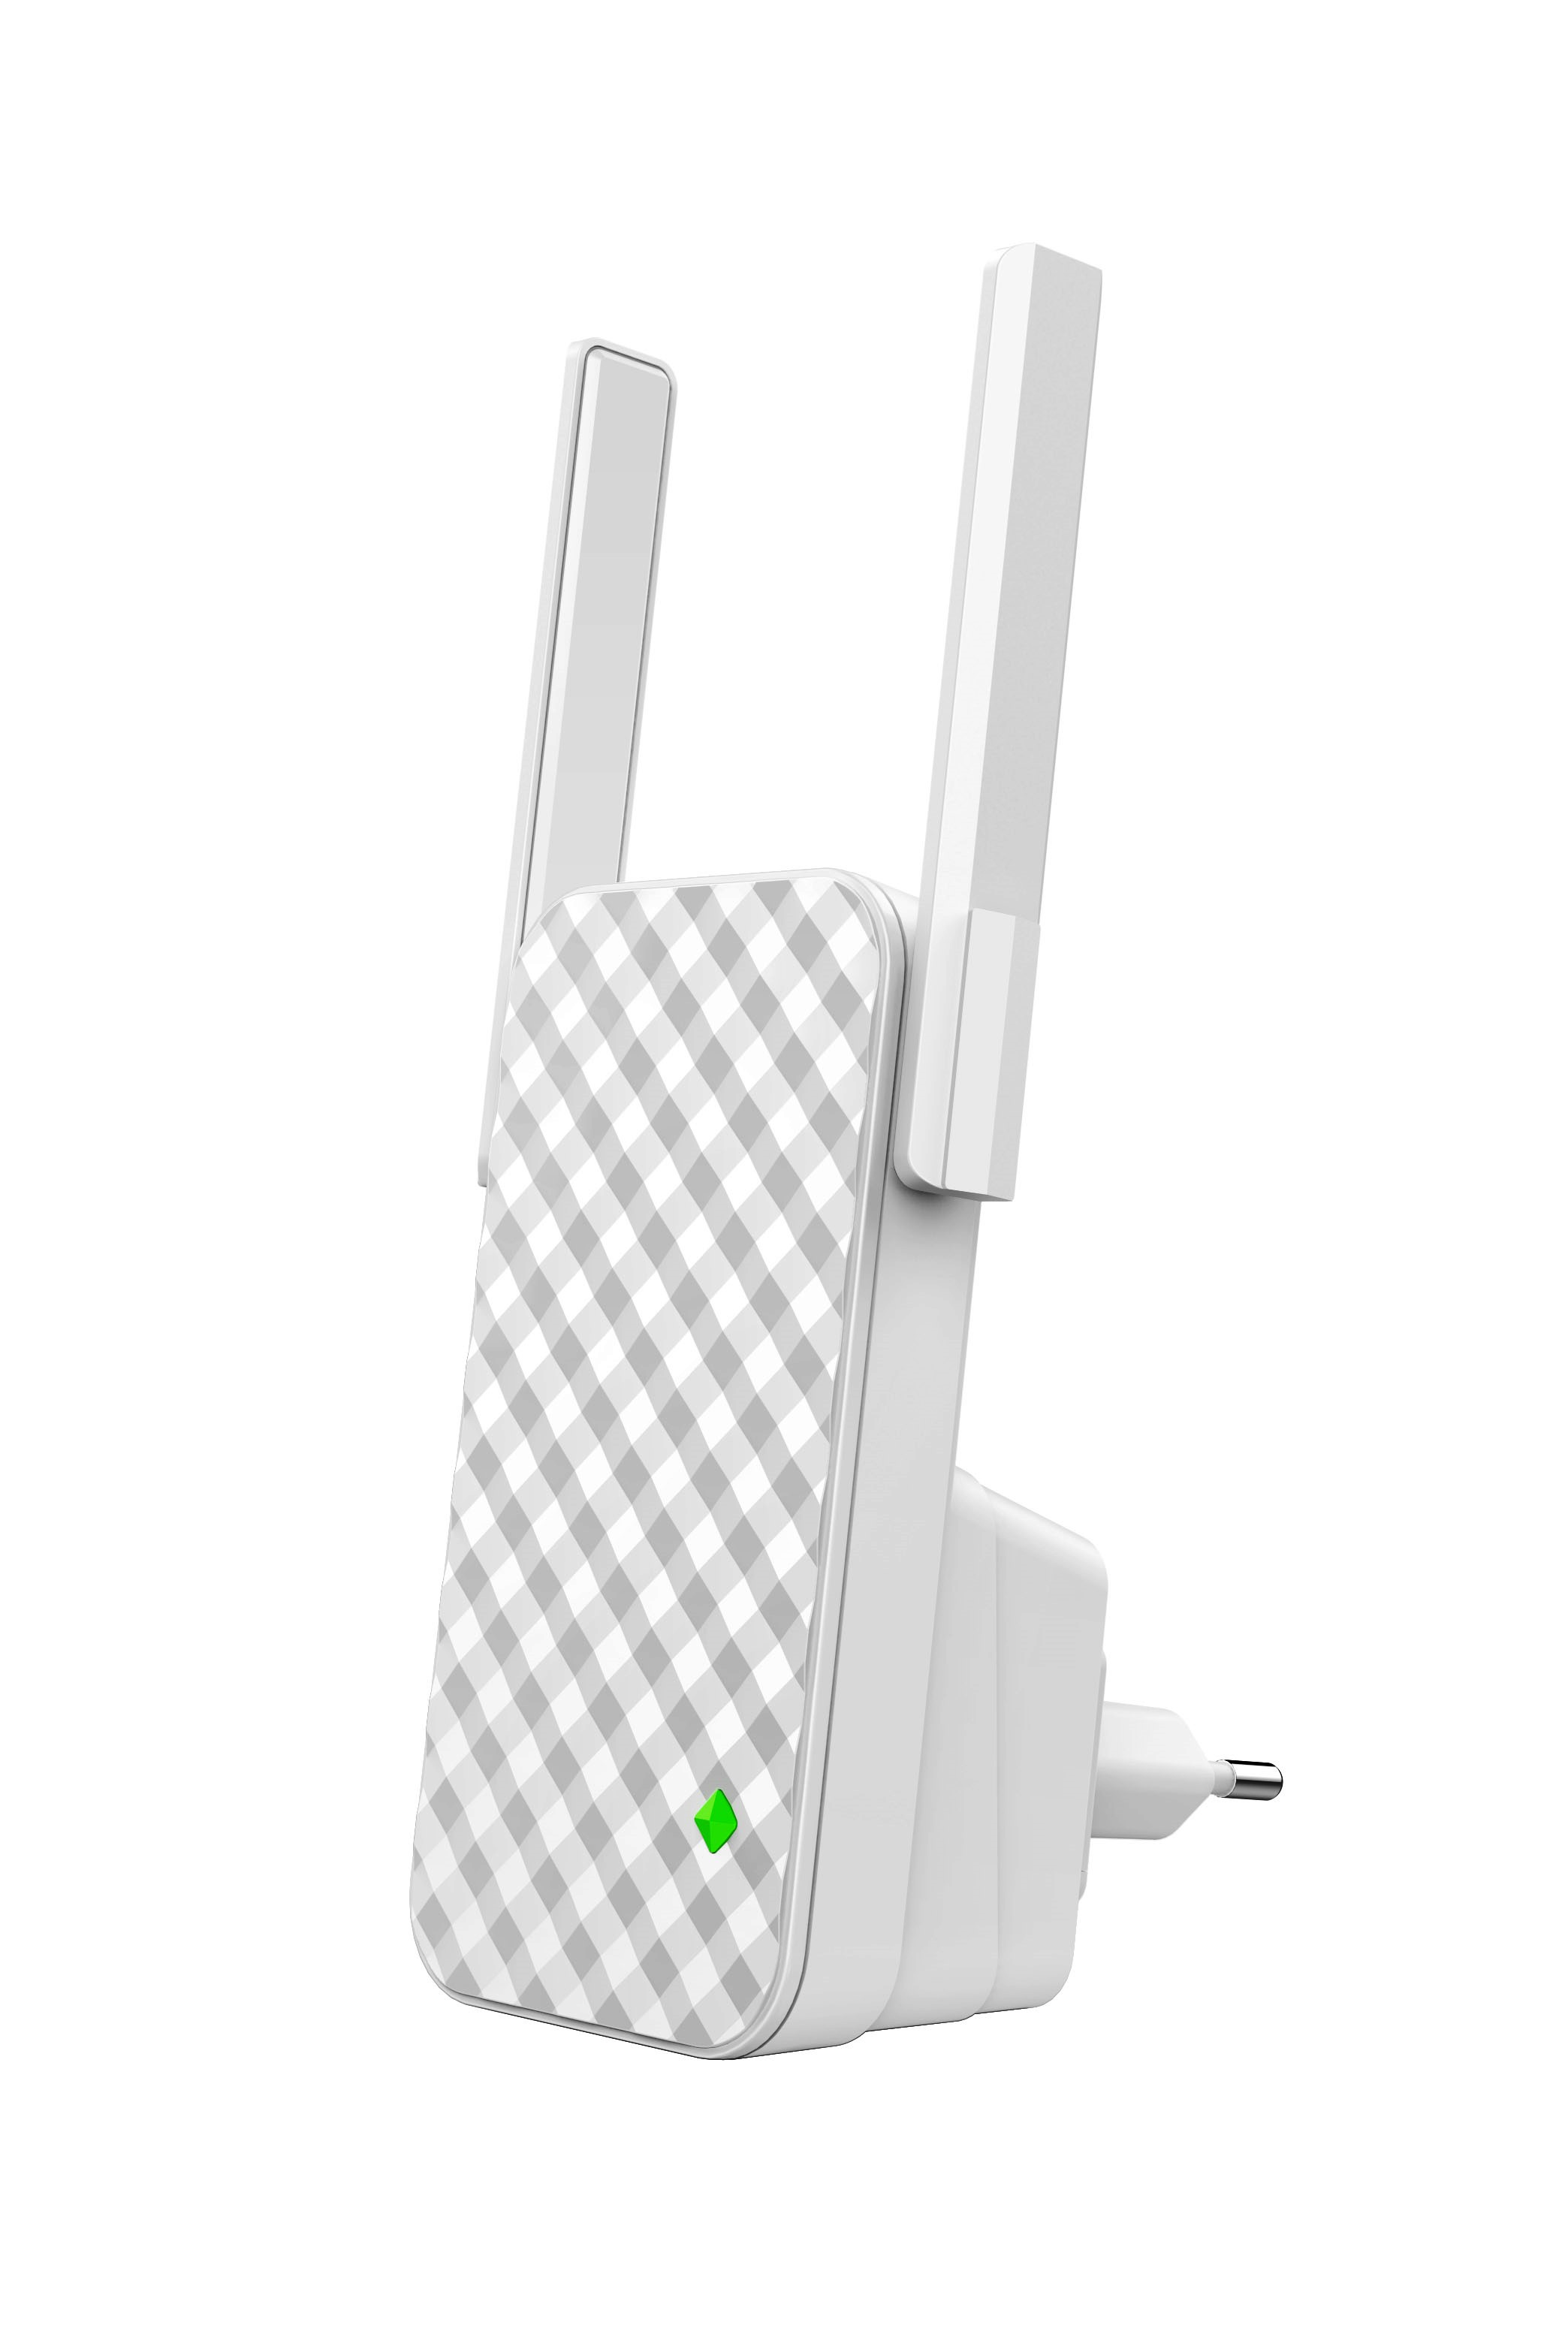 Obrázek Tenda A9 - WiFi N Range Extender, opakovač 300 Mb/s, WPS, 2x 3 dBi anténa